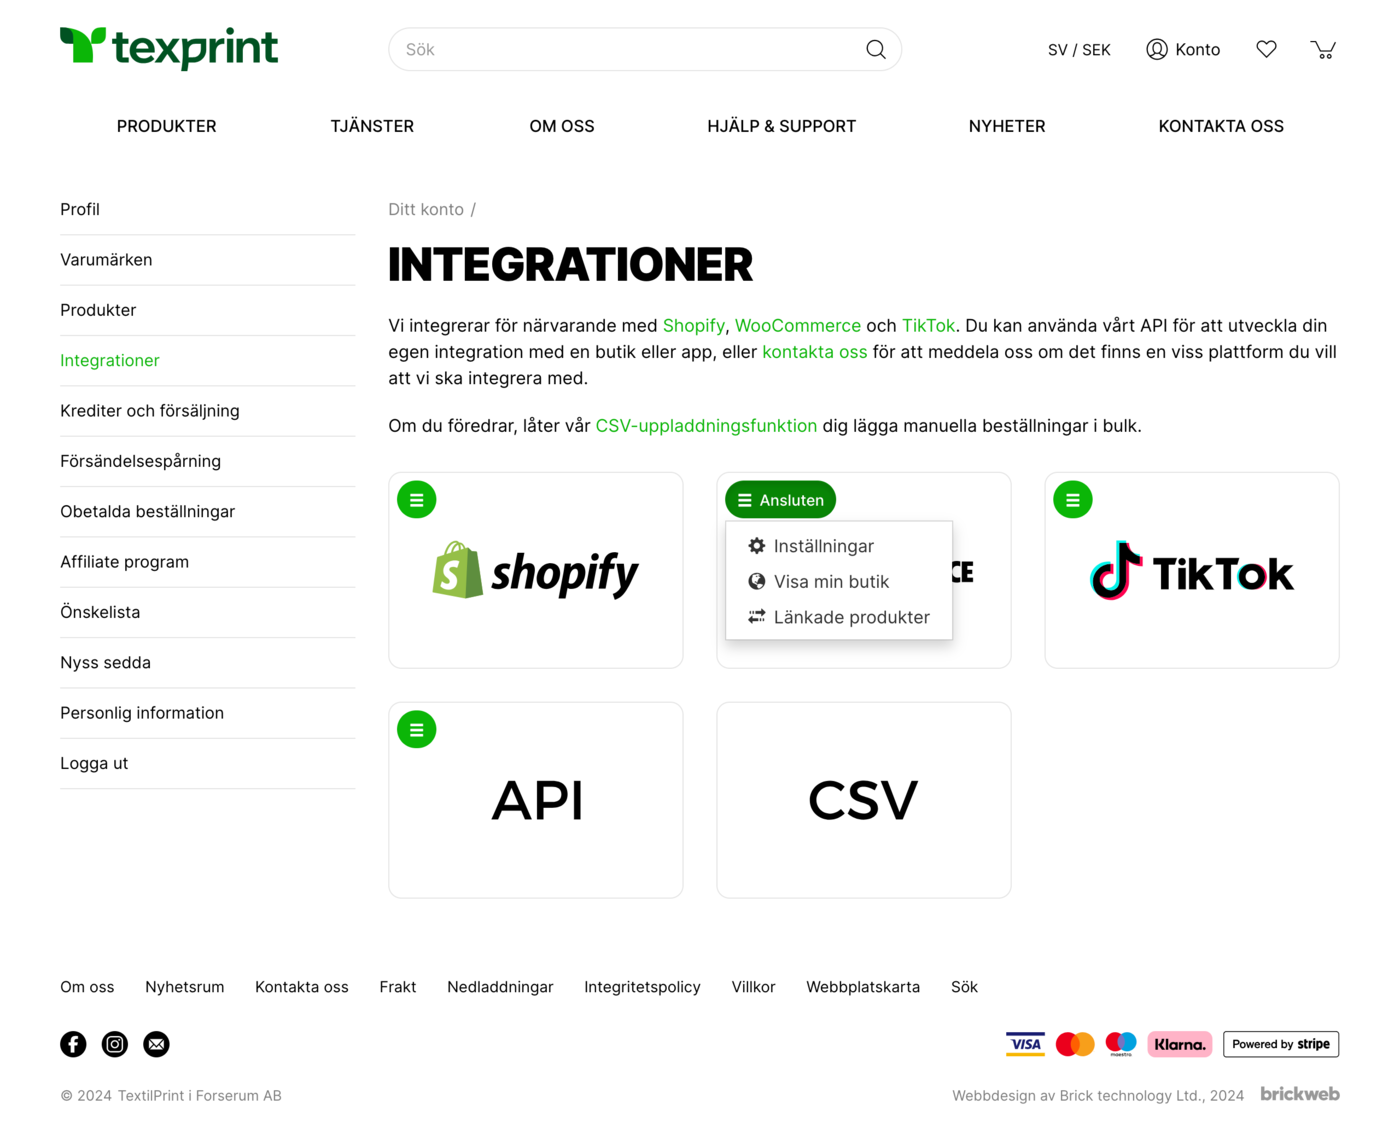 TexPrint Integrations